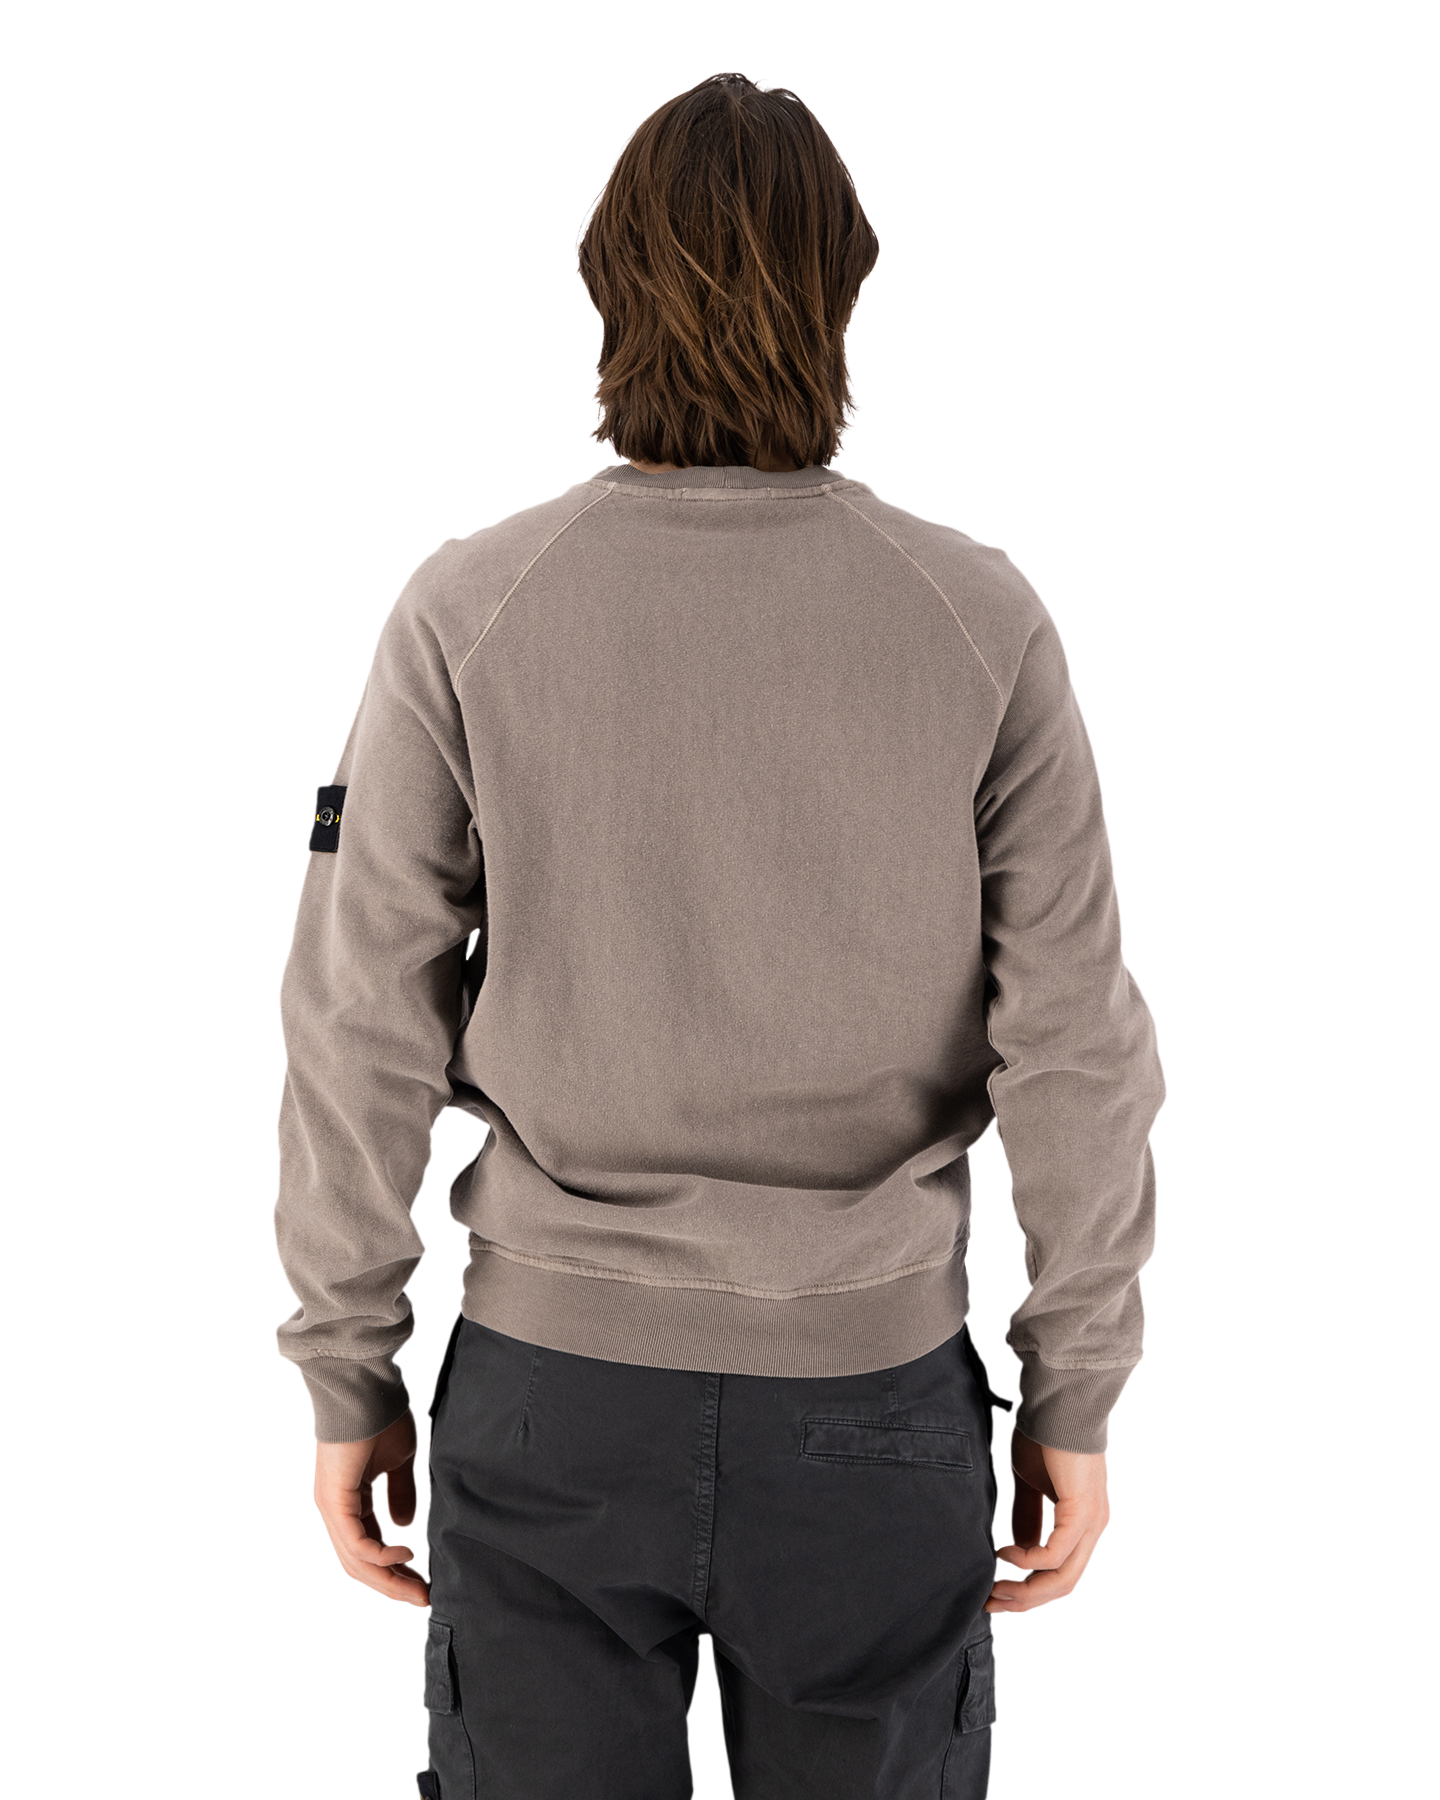 Stone Island 66060 Malfile Fleece Garment Dyed 'Old' Effect Crewneck Sweatshirt GRIJS 5